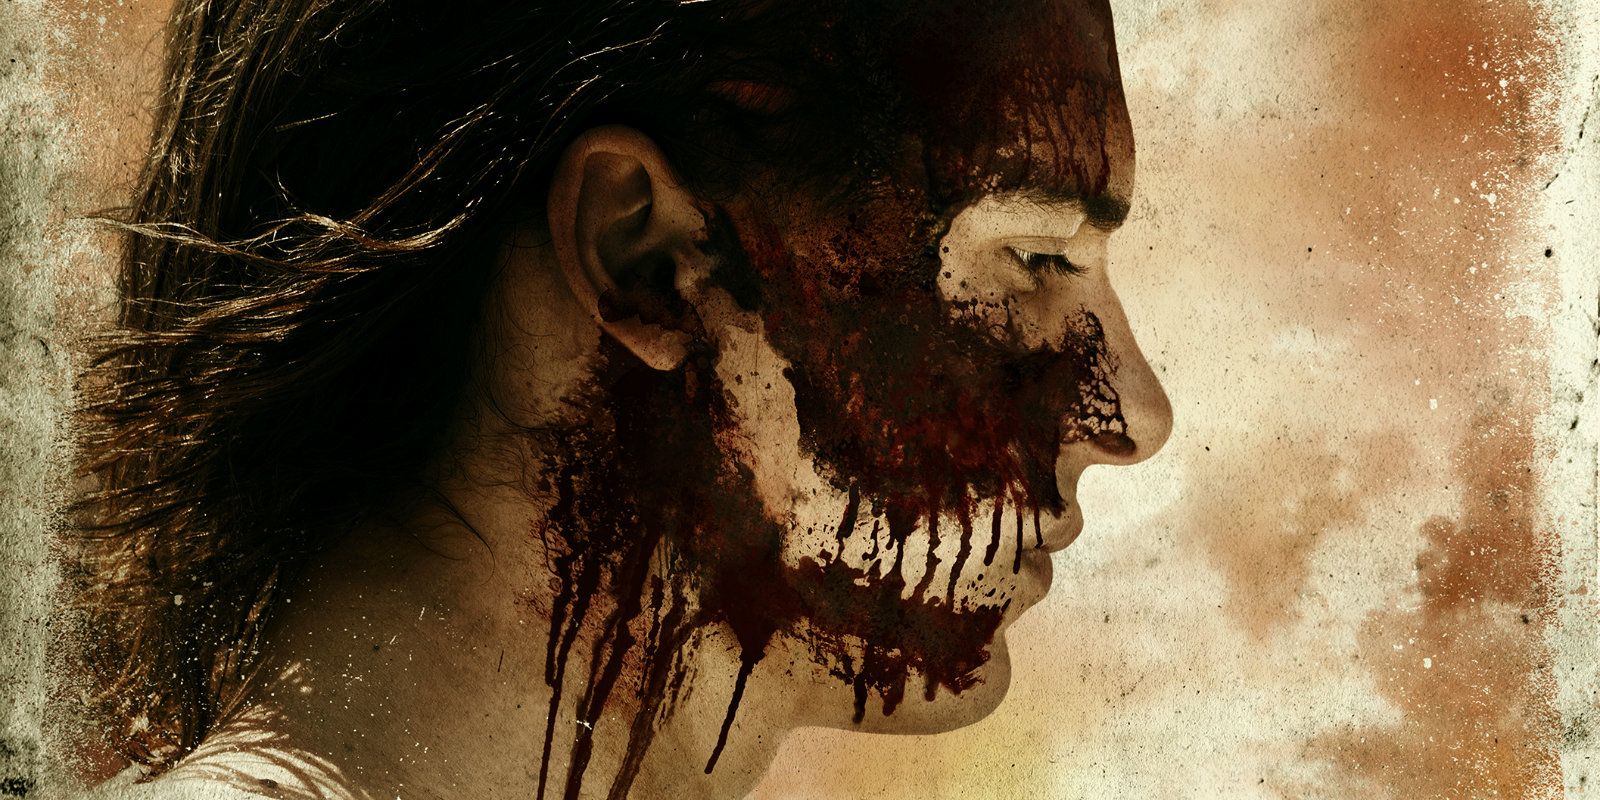 A promo image from Fear the Walking Dead season 3.